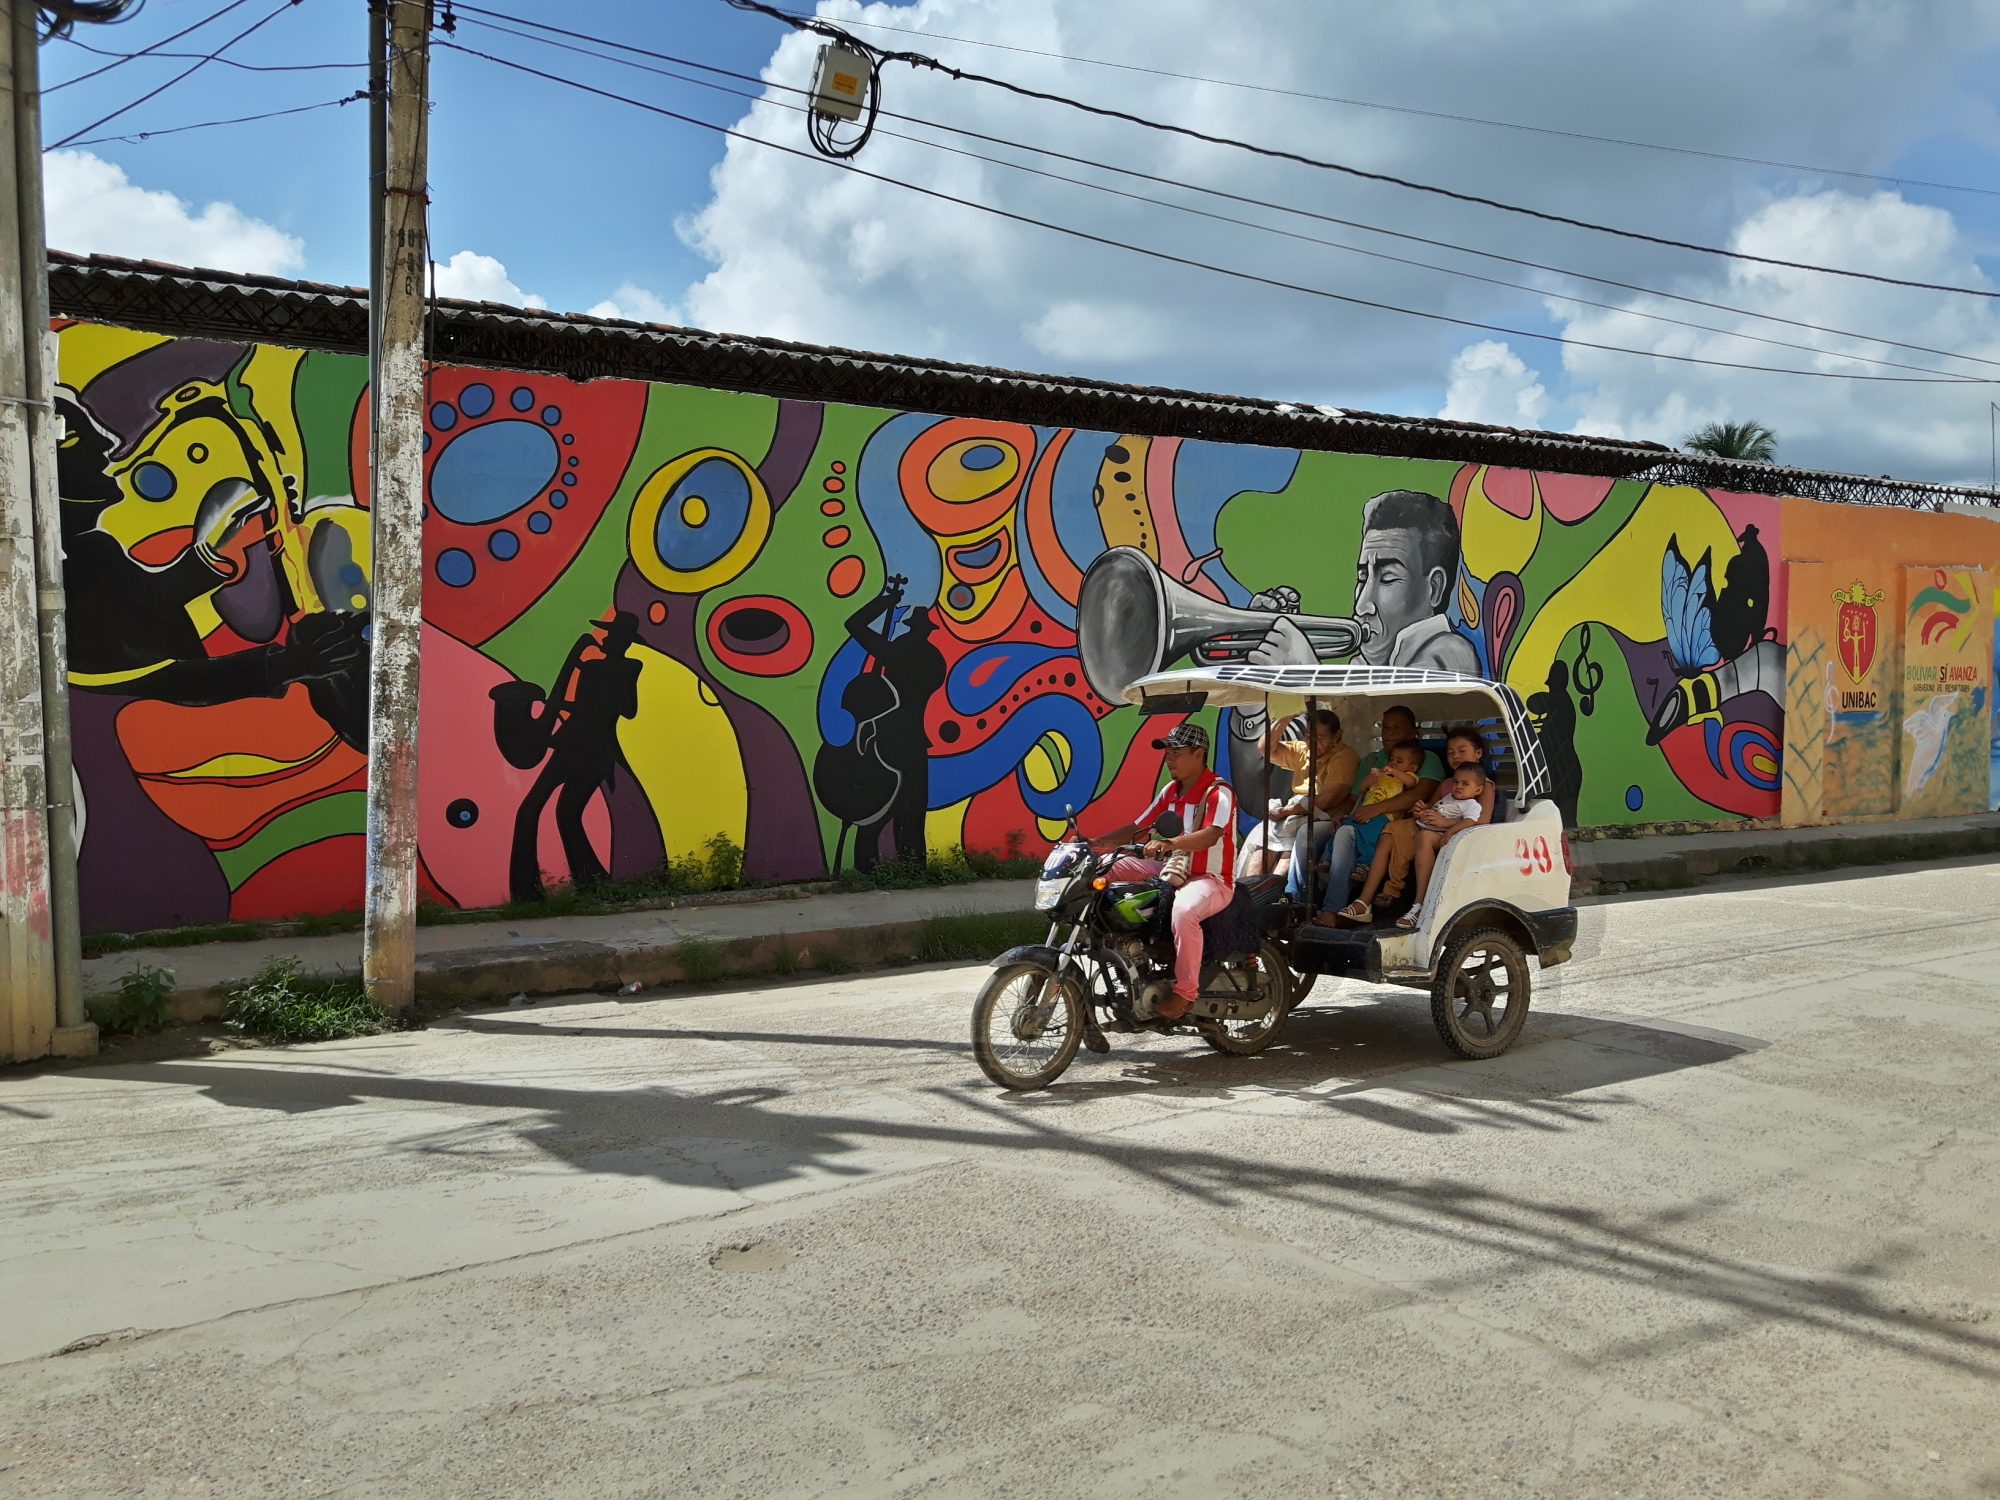 Colombia Mompox - graffiti